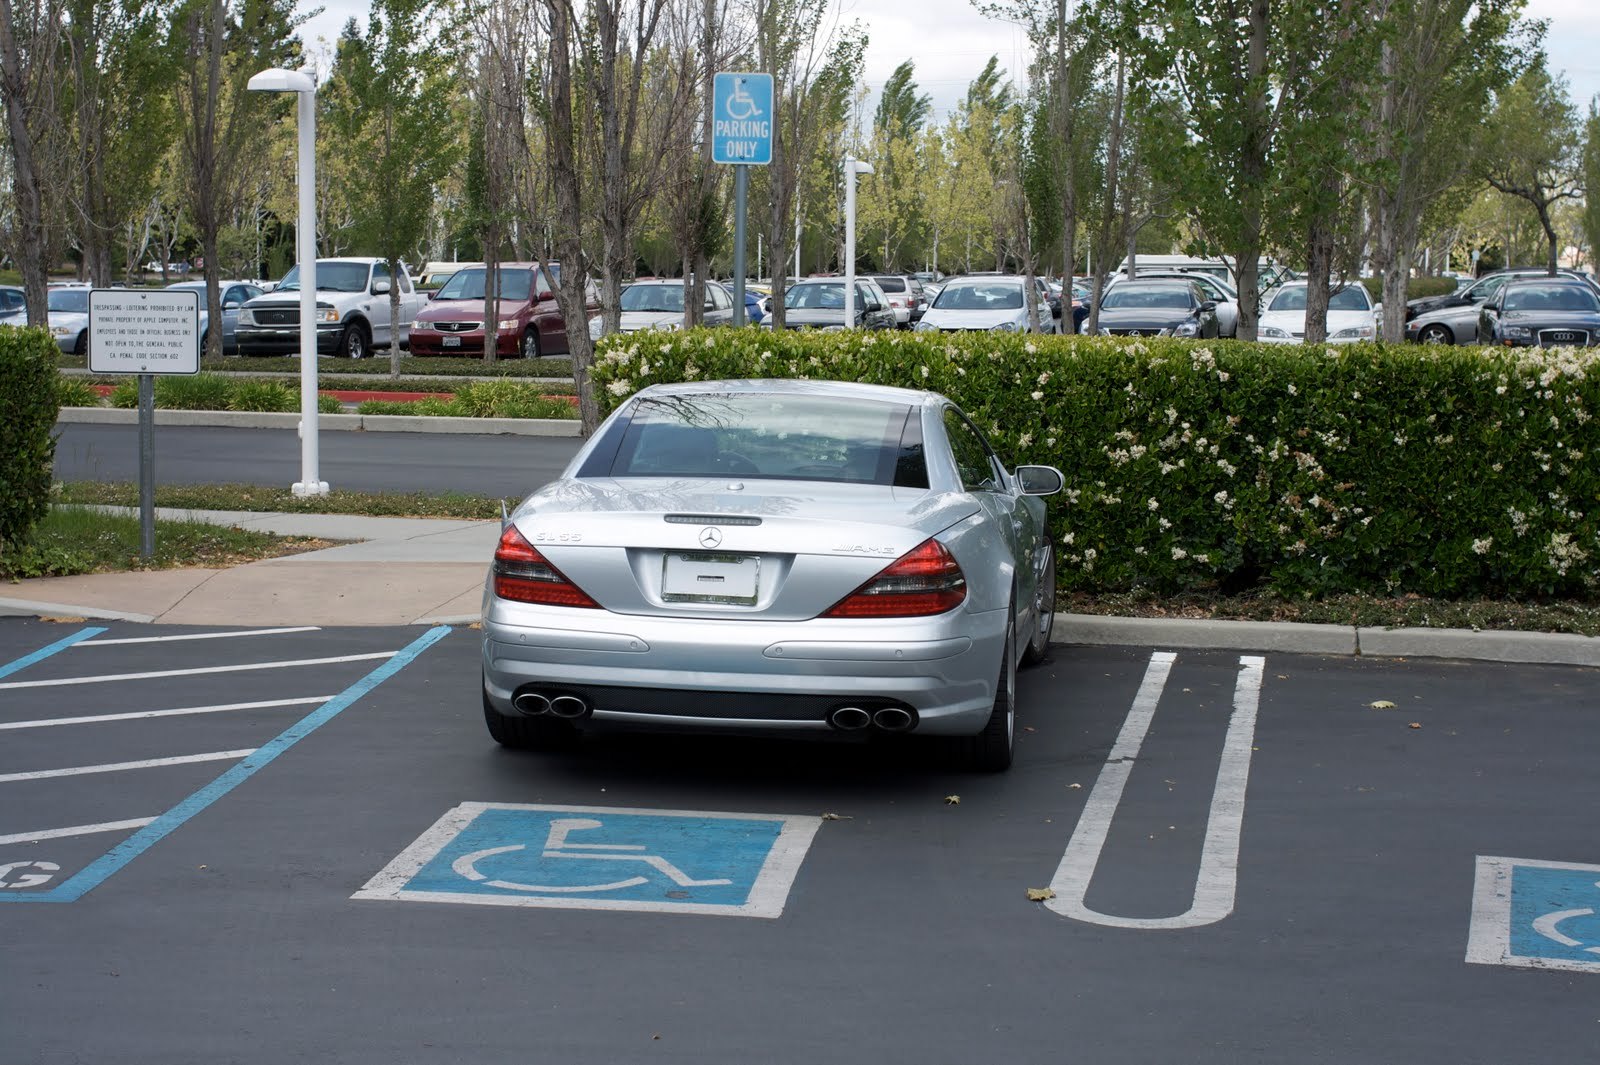 Mercedesul lui Steve Jobs, parcat pe locul destinat invalizilor.